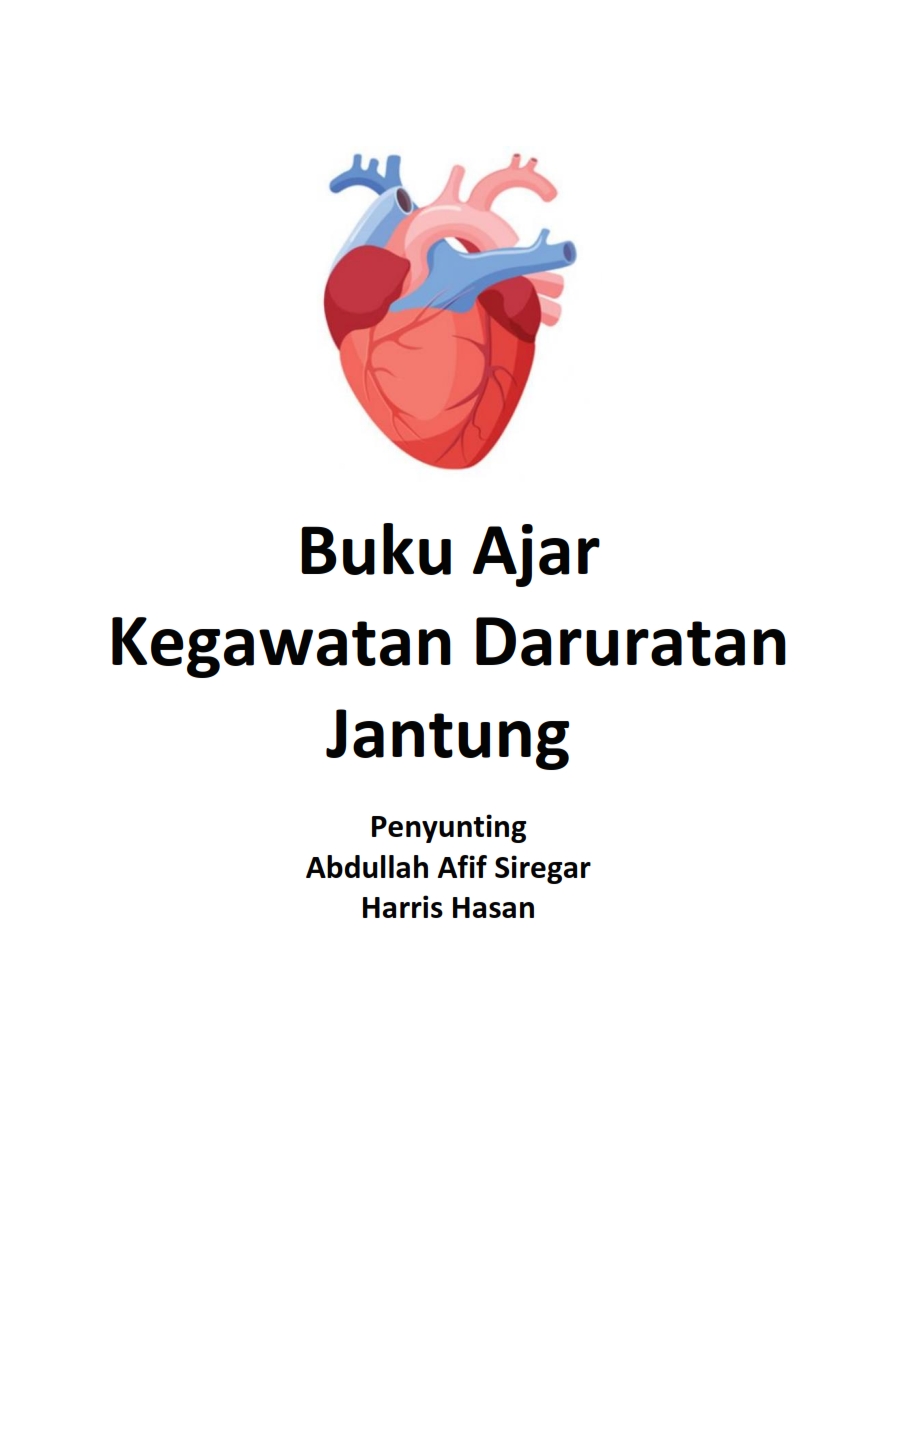 Cover of Buku Ajar Kegawat Daruratan Jantung'